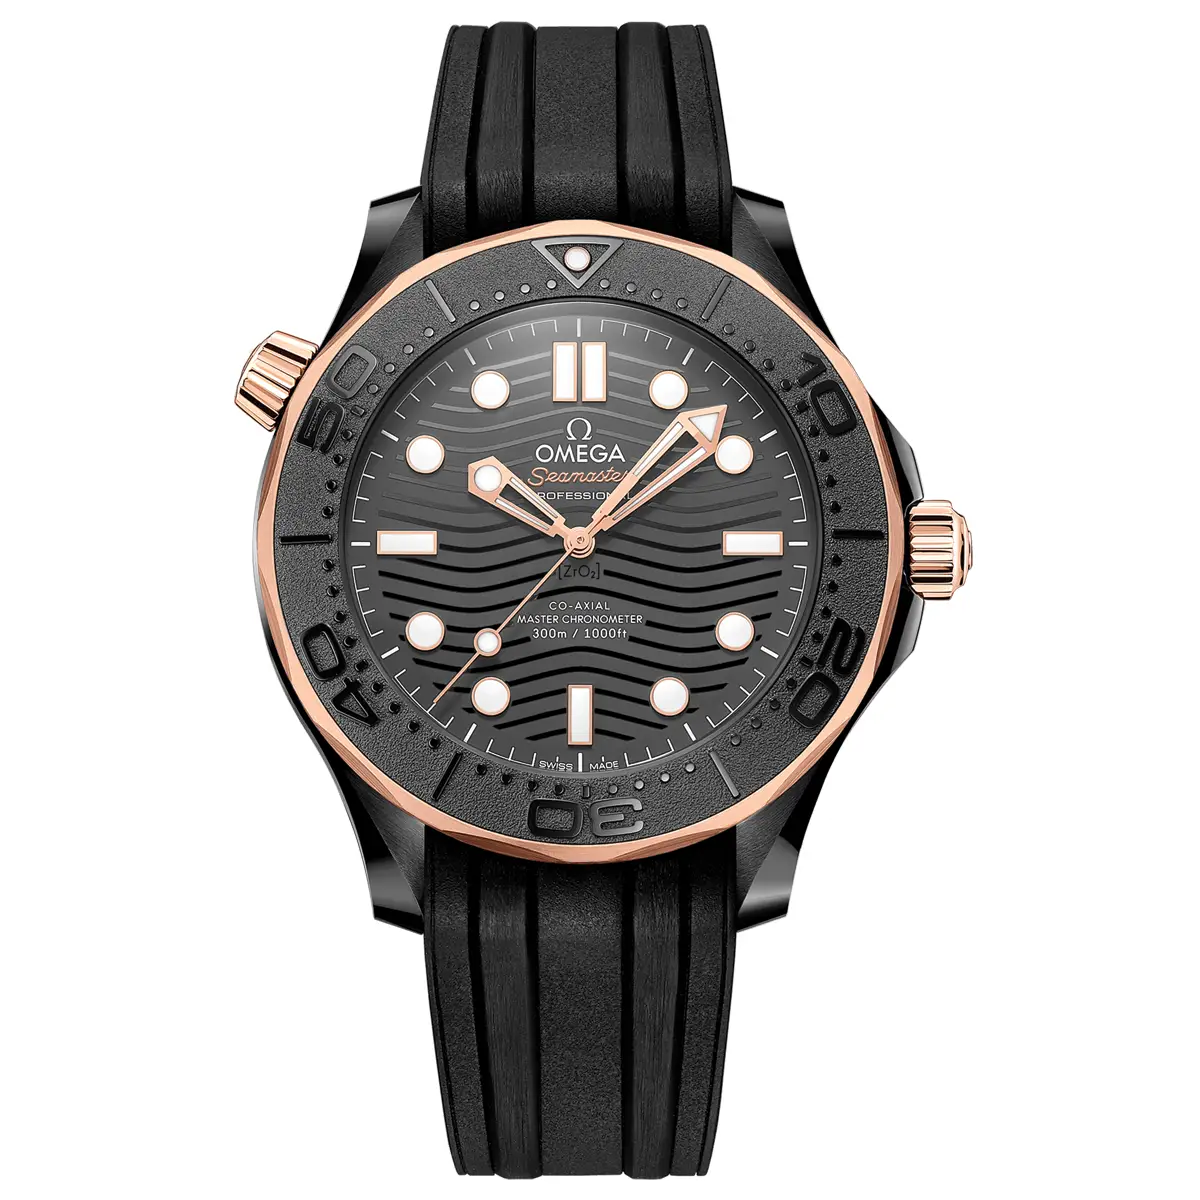 Đồng hồ Omega Seamaster Diver Master Chronometer 210.62.44.20.01.001 mặt số màu đen. Dây đeo bằng cao su. Thân vỏ bằng ceramic black.